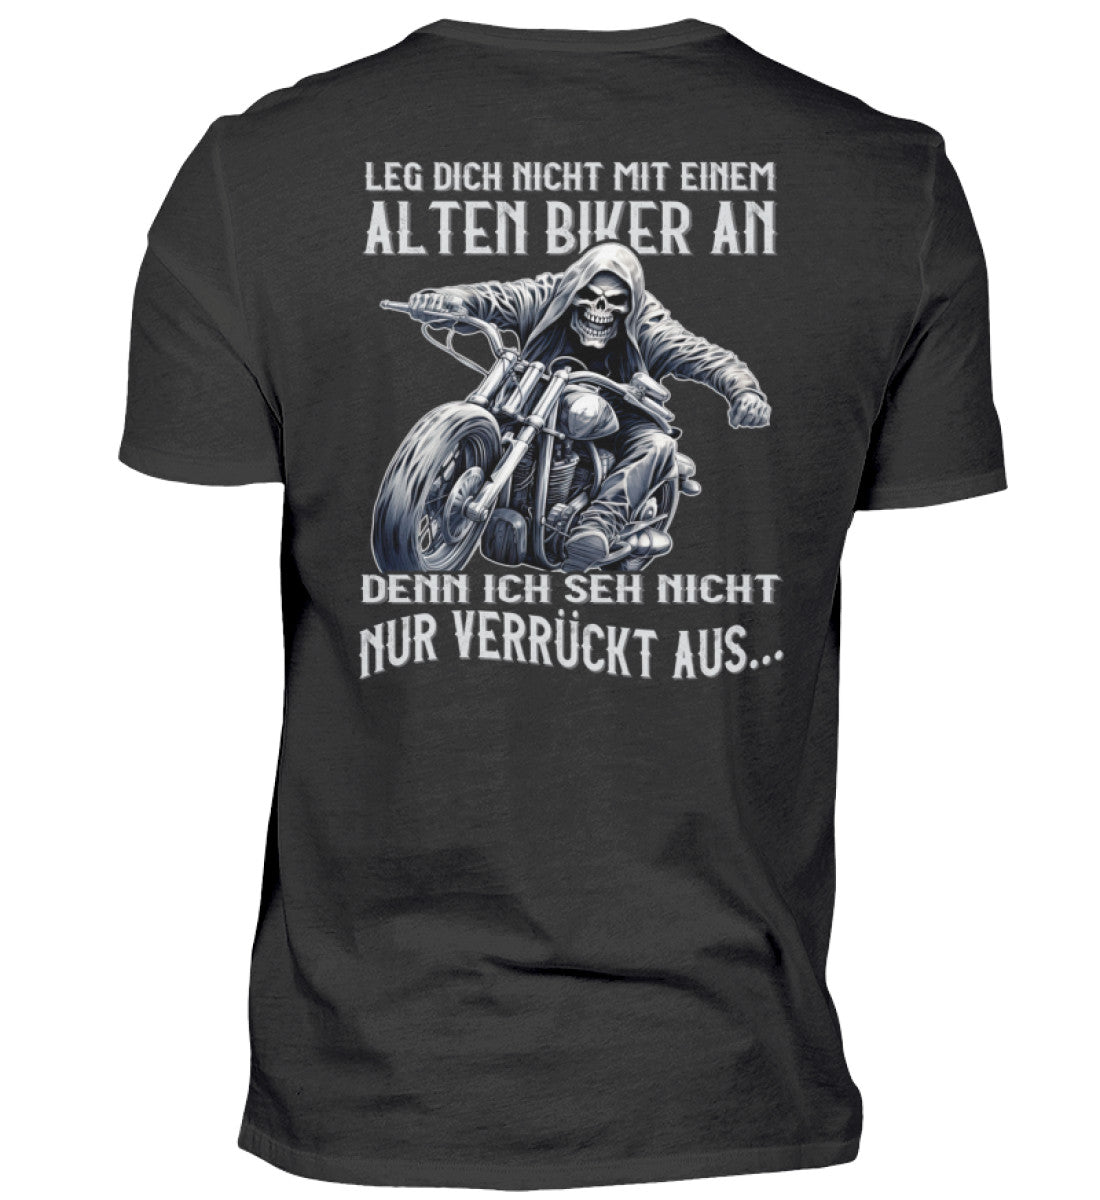 Ein Biker T-Shirt für Motorradfahrer von Wingbikers mit dem Aufdruck, Leg dich nicht mit einem alten Biker an, denn ich seh nicht nur verrückt aus, als Back Print - in schwarz.